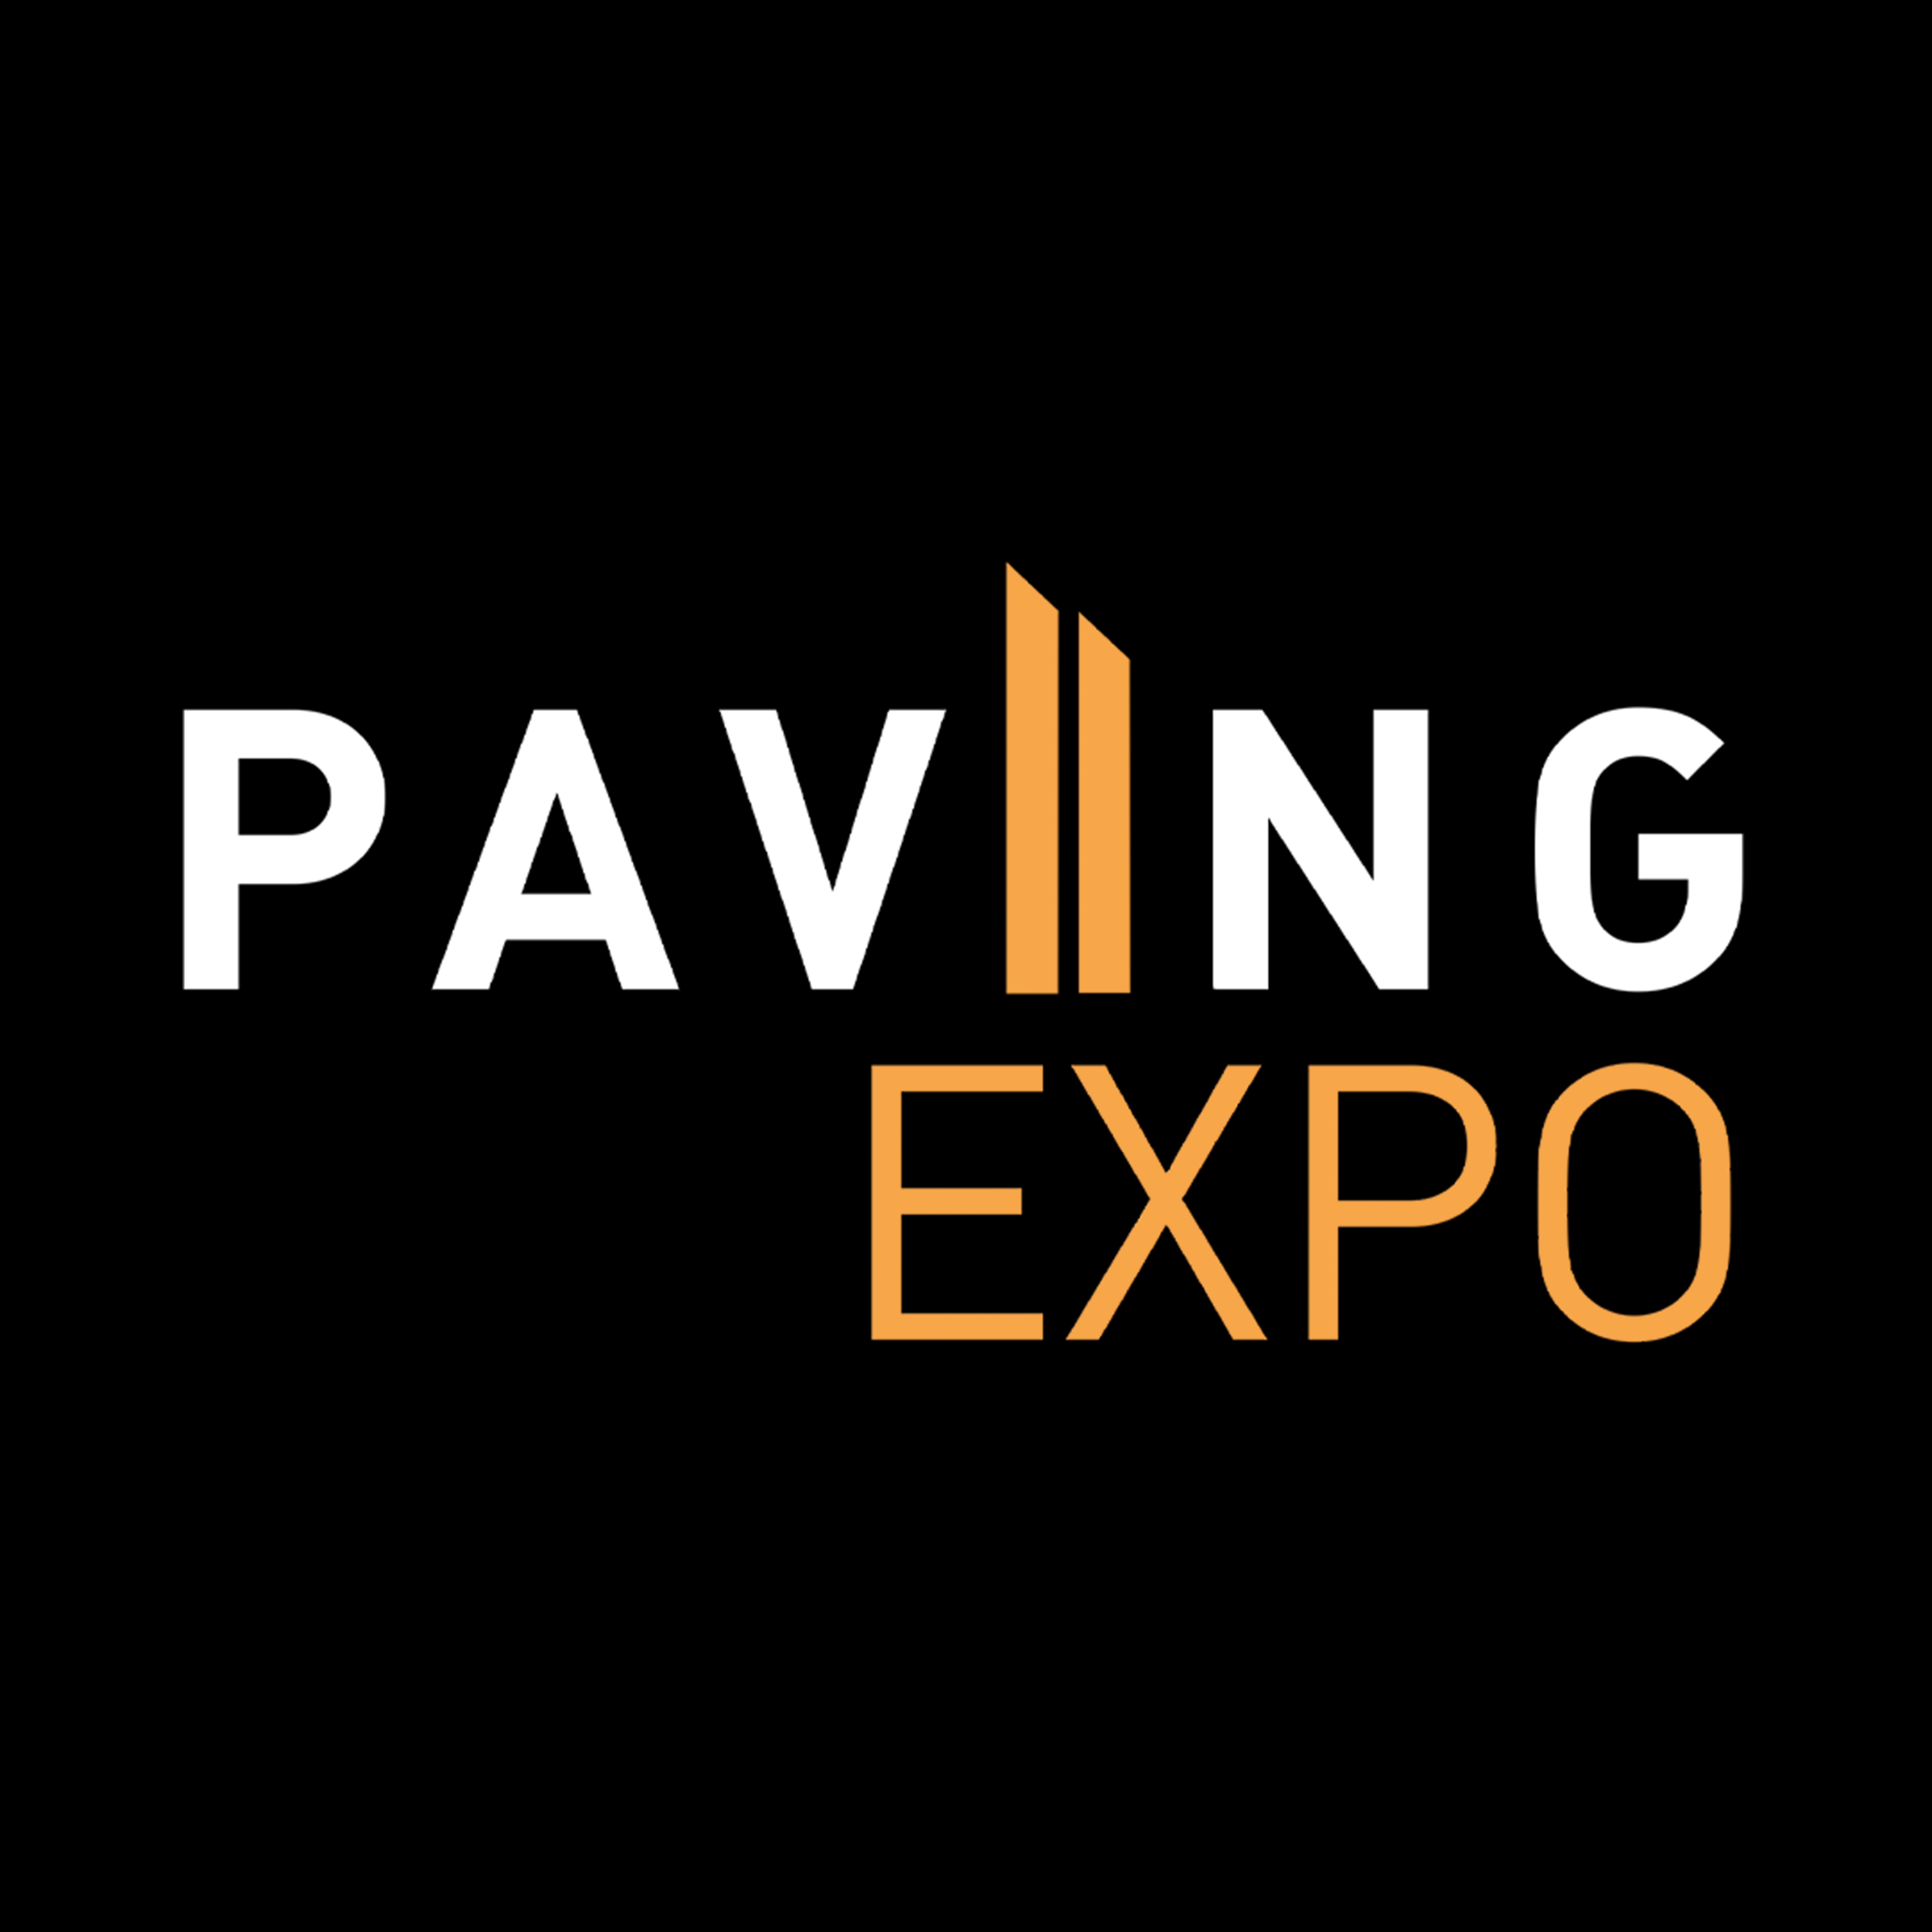 Paving Expo se consolida como vitrine do setor de infraestrutura